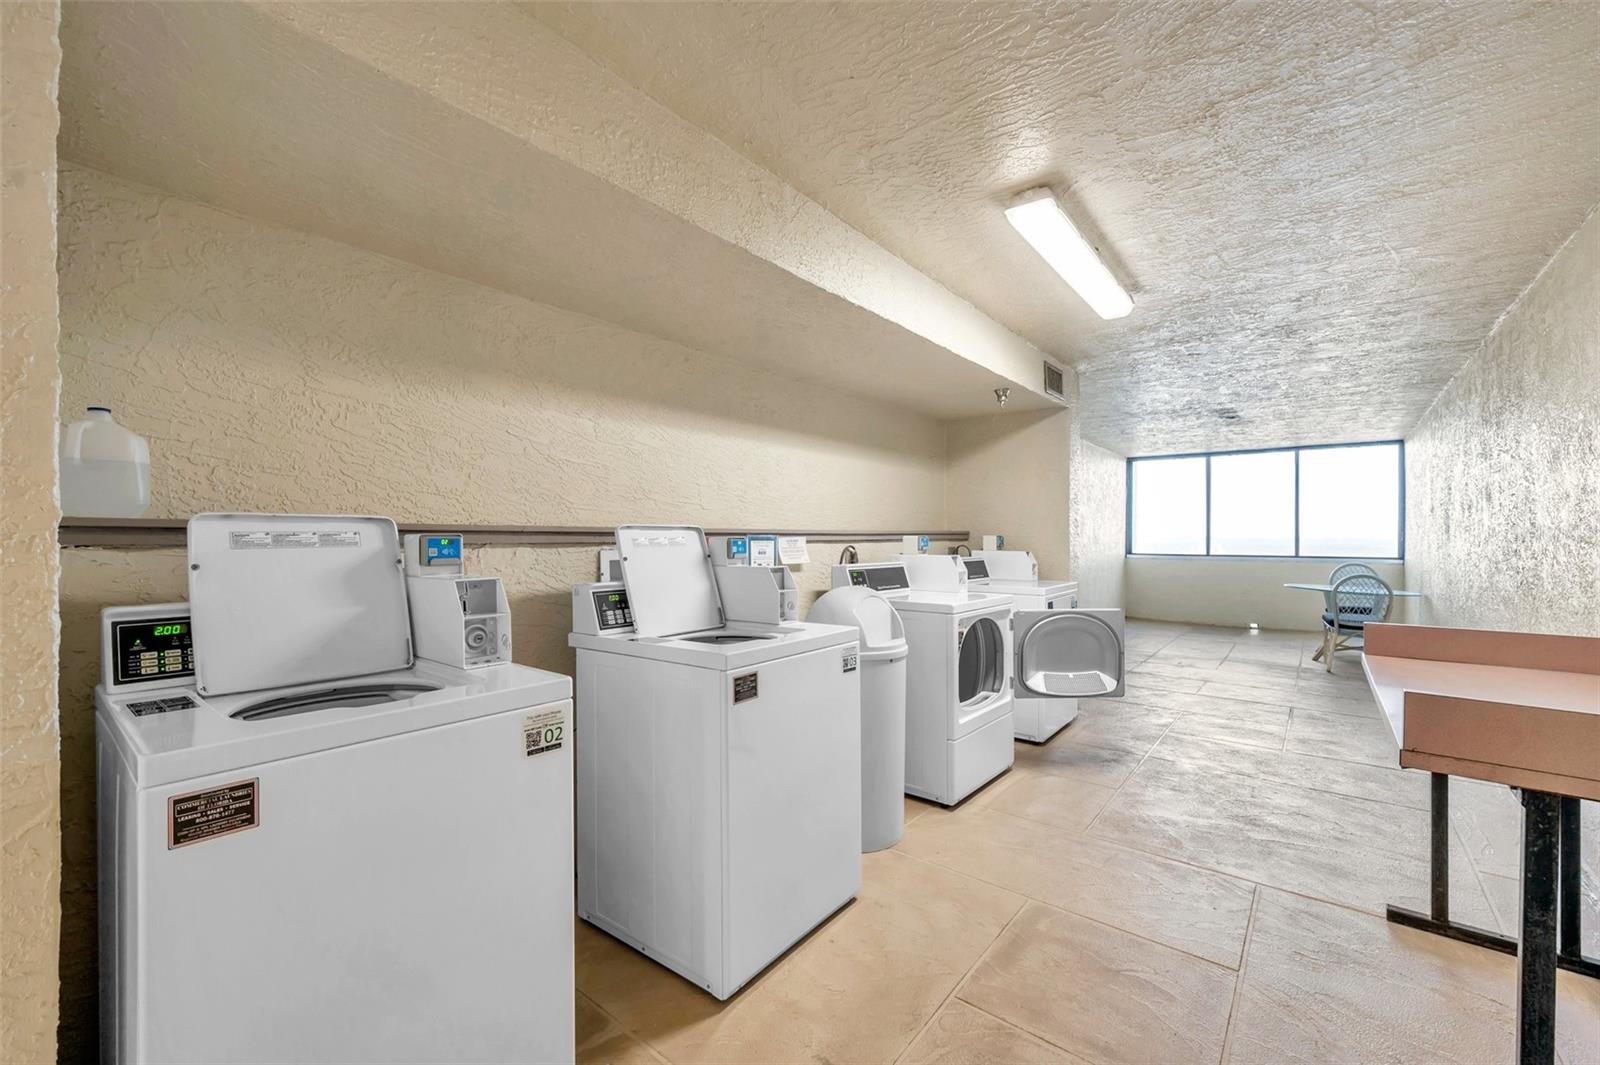 Laundry available on each floor.